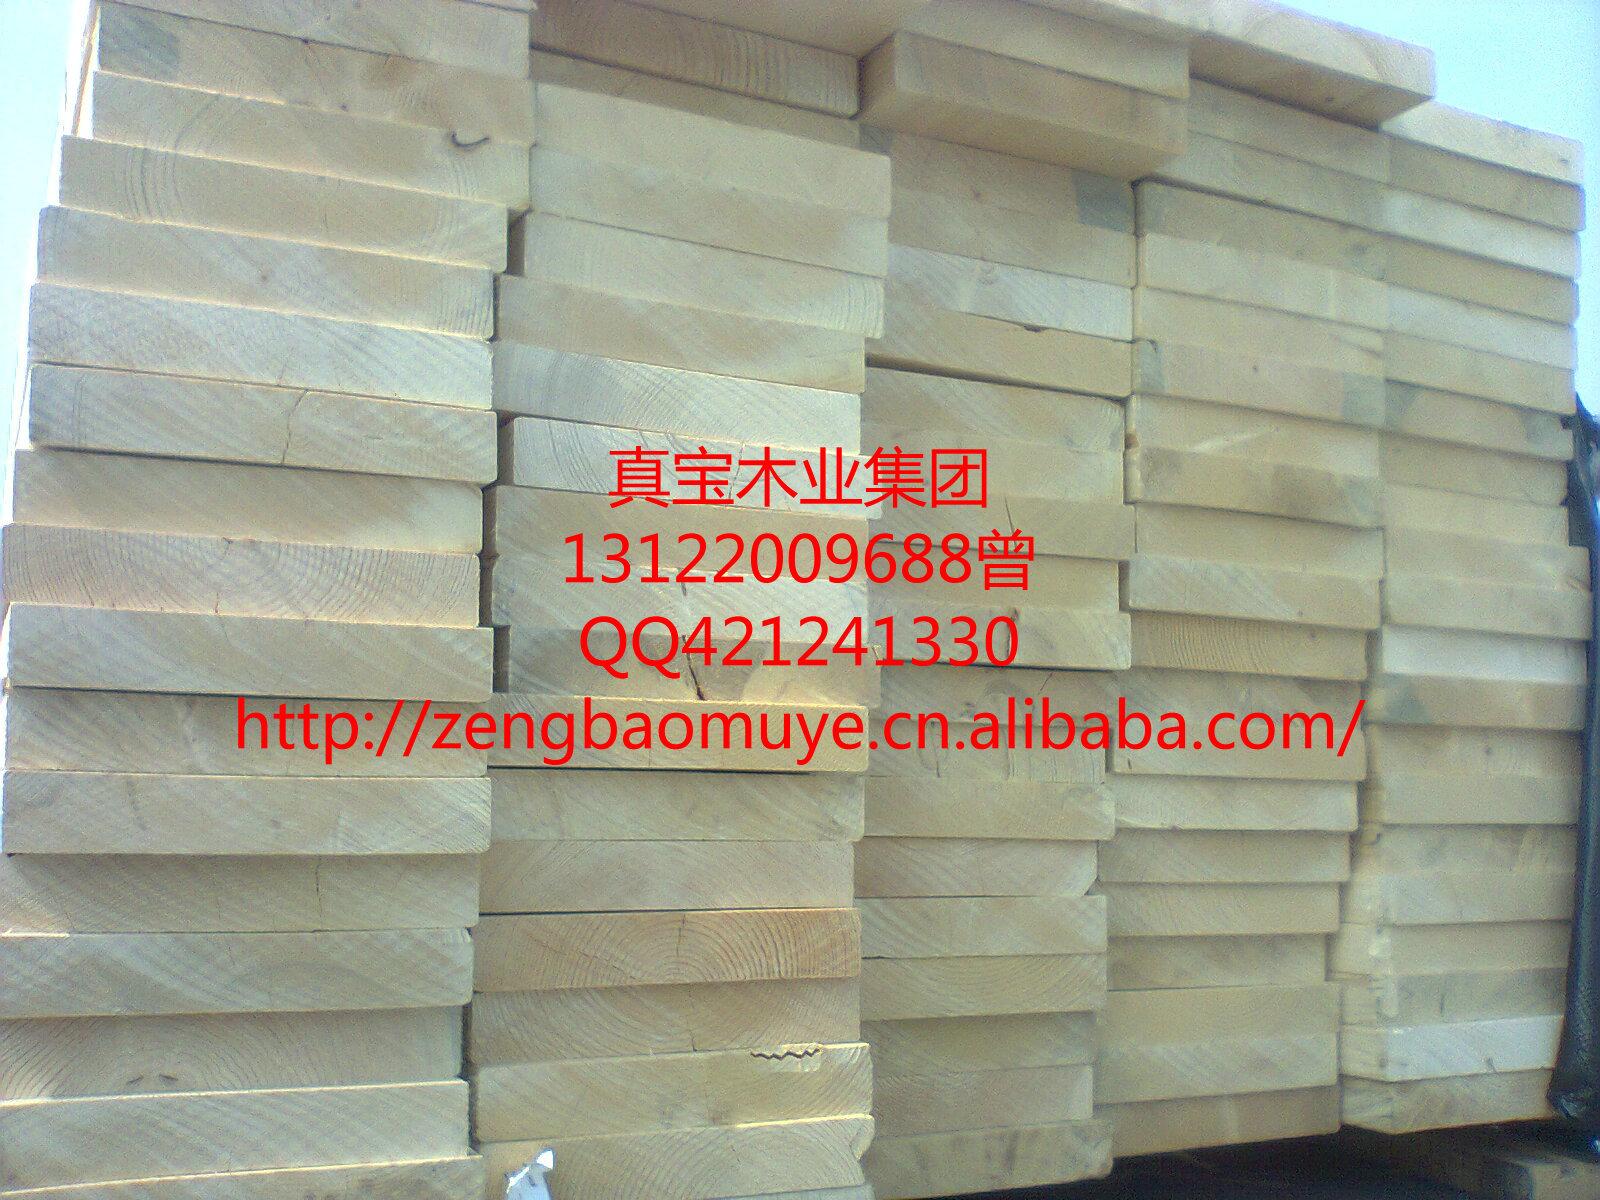 二级加松板材价格*低加松SPF板材中国总代理13122009688曾